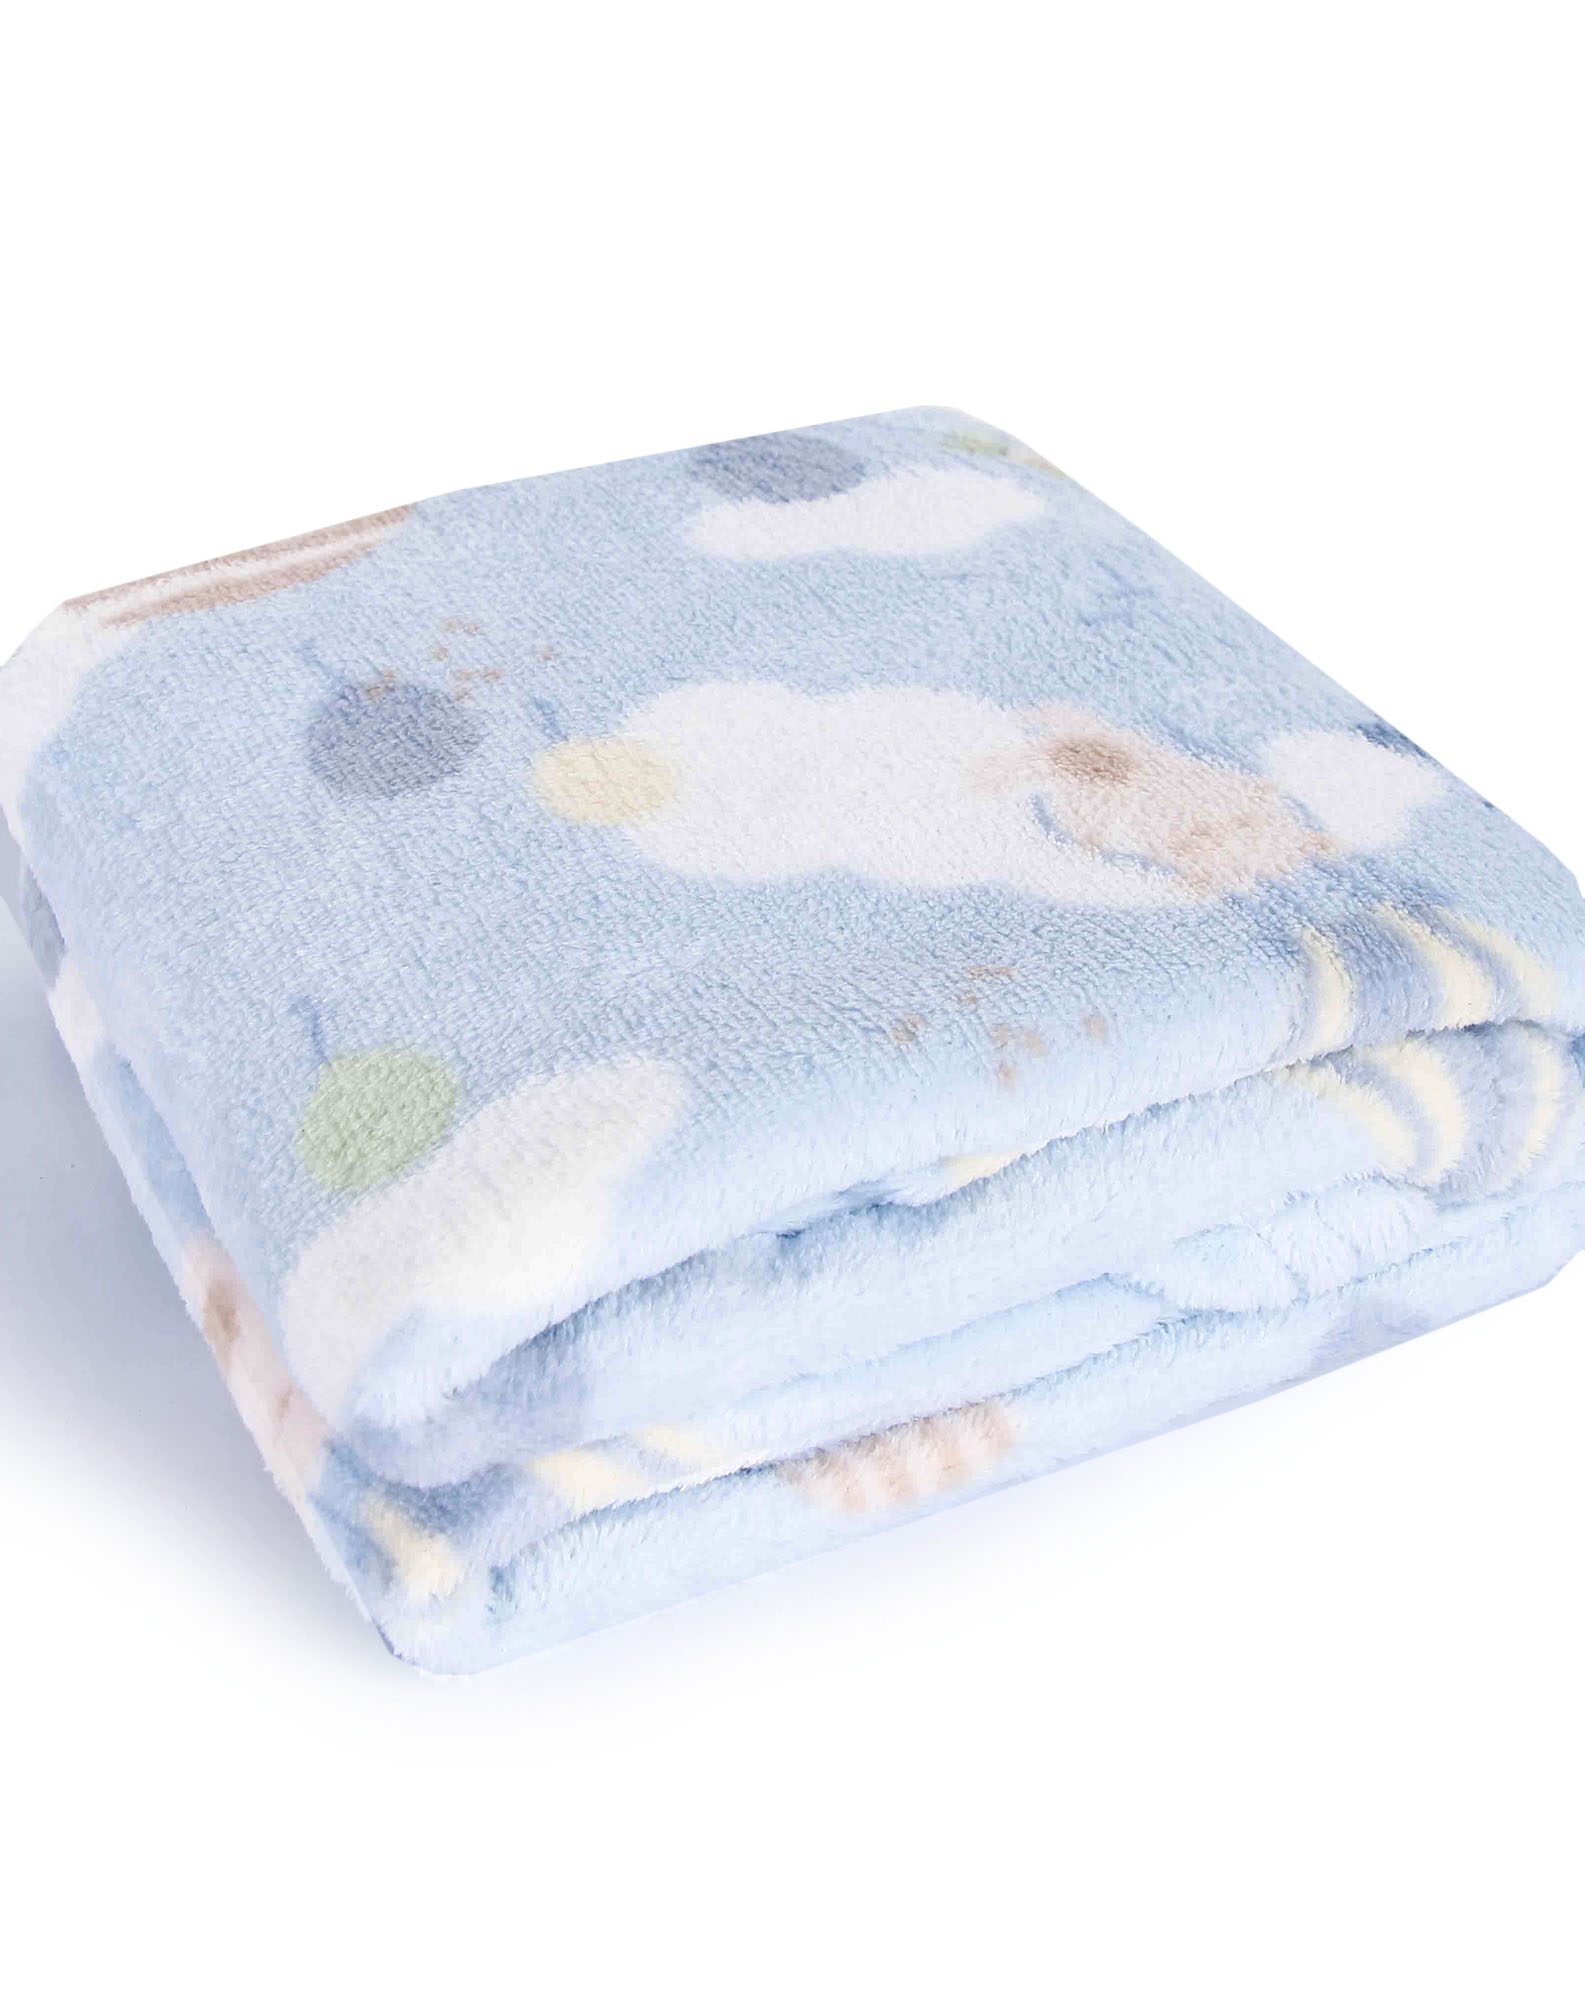 705869001 cobertor manta bebê estampada camesa azul u 667